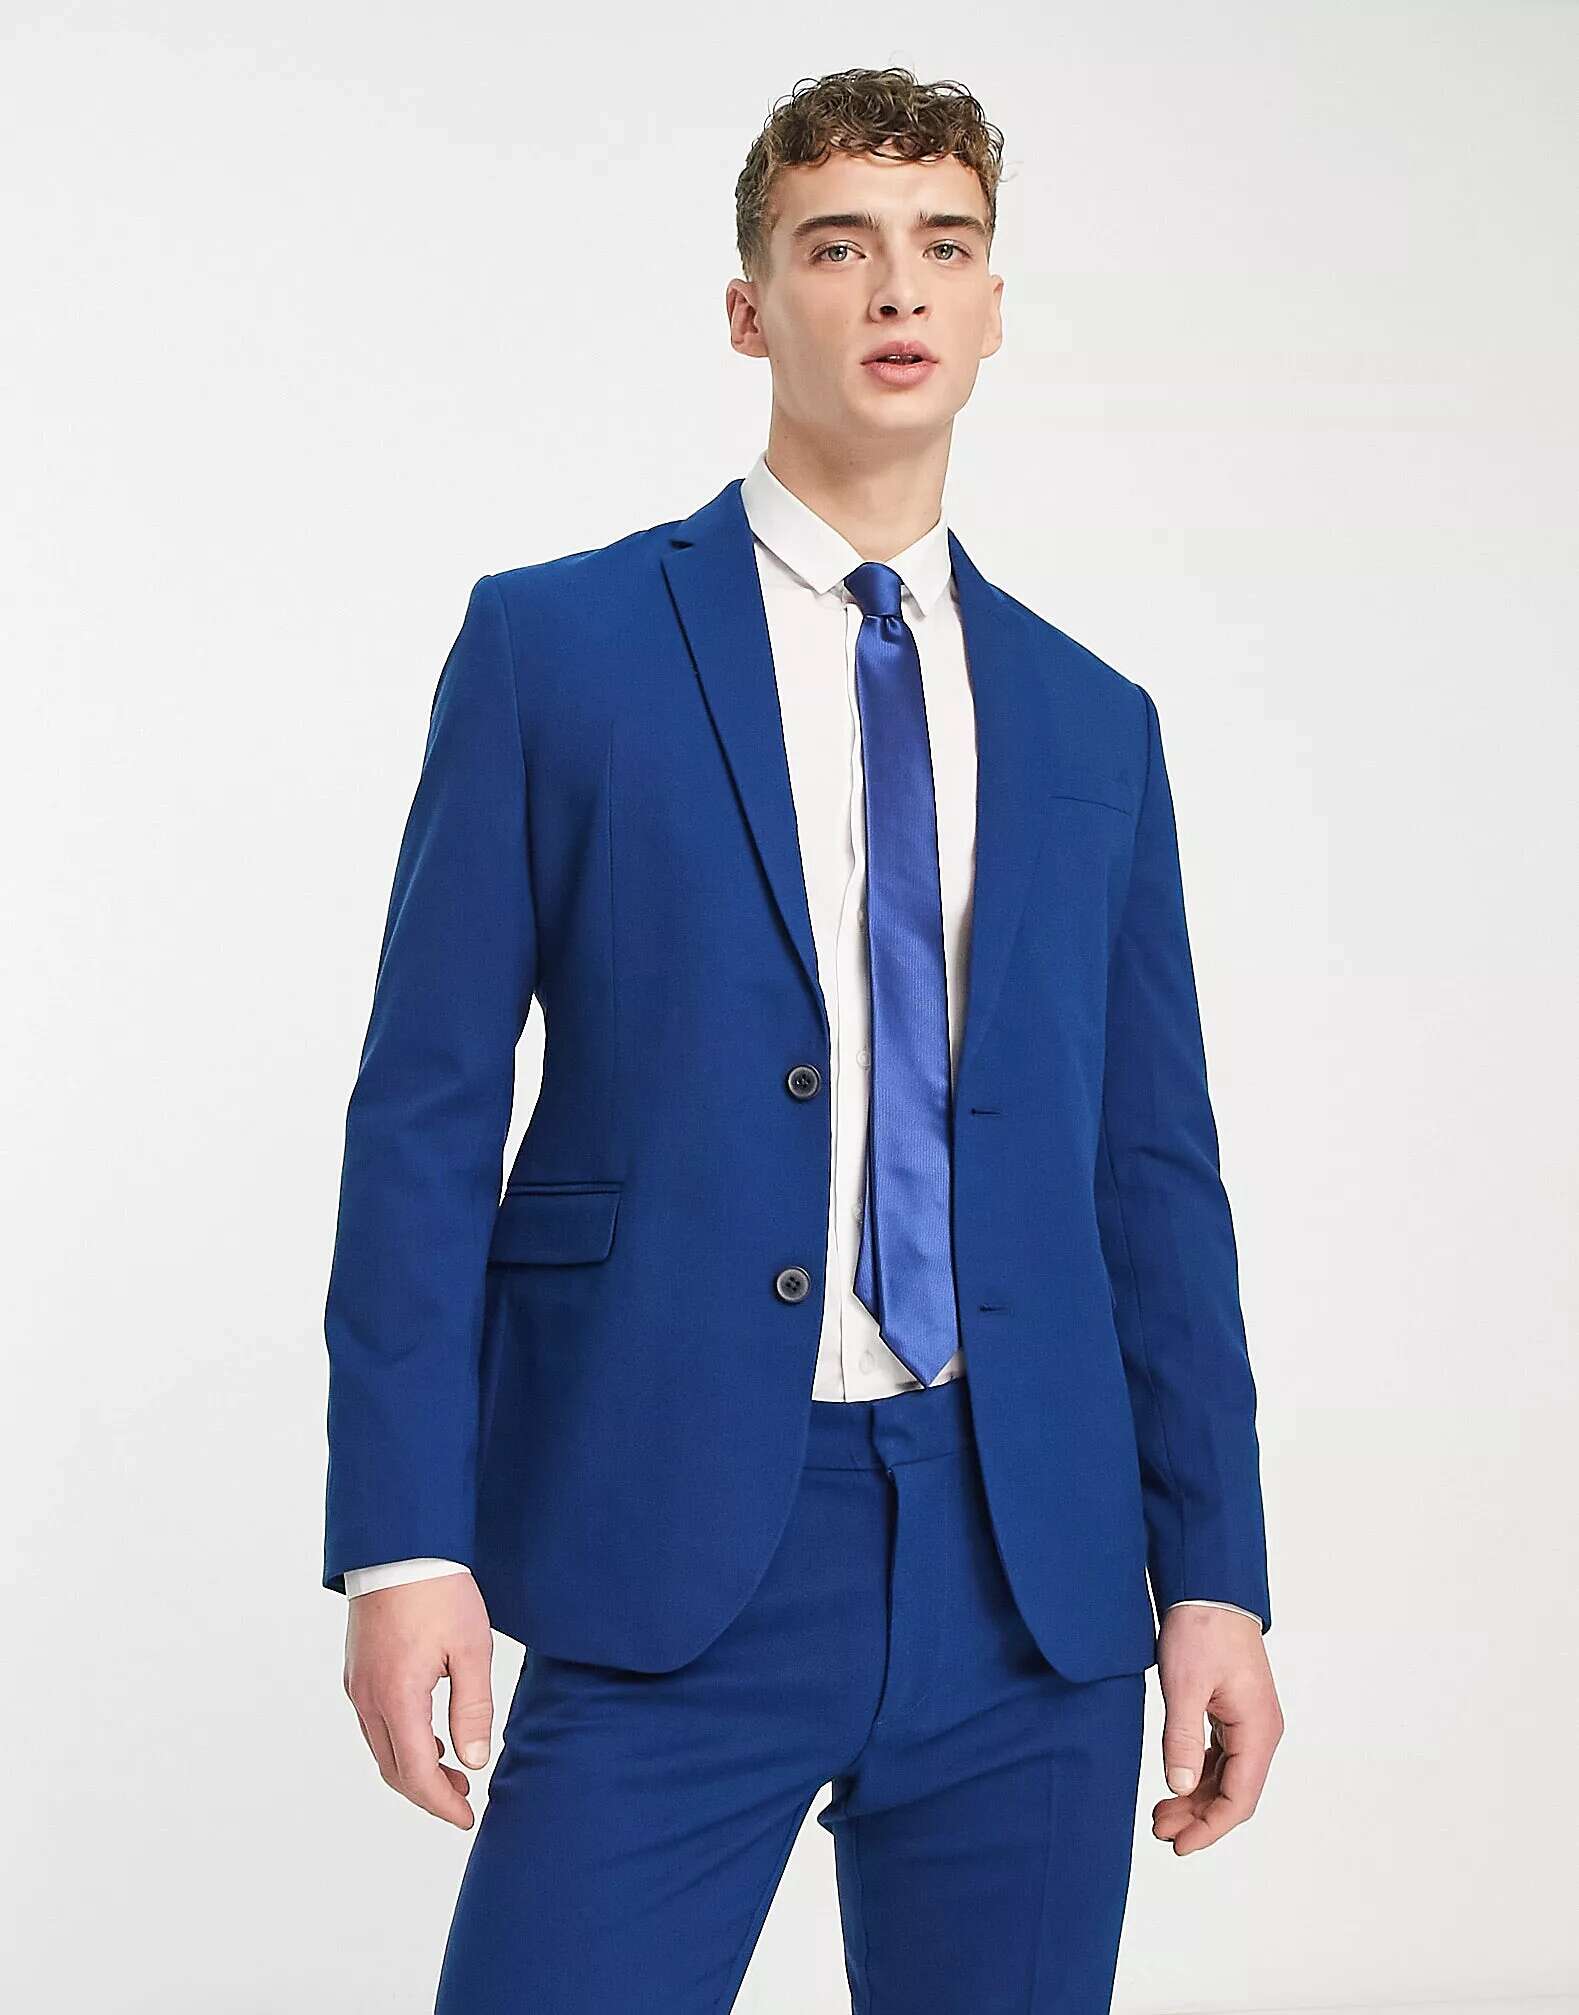 Узкий пиджак цвета индиго New Look узкий пиджак new look из темно синего жаккарда